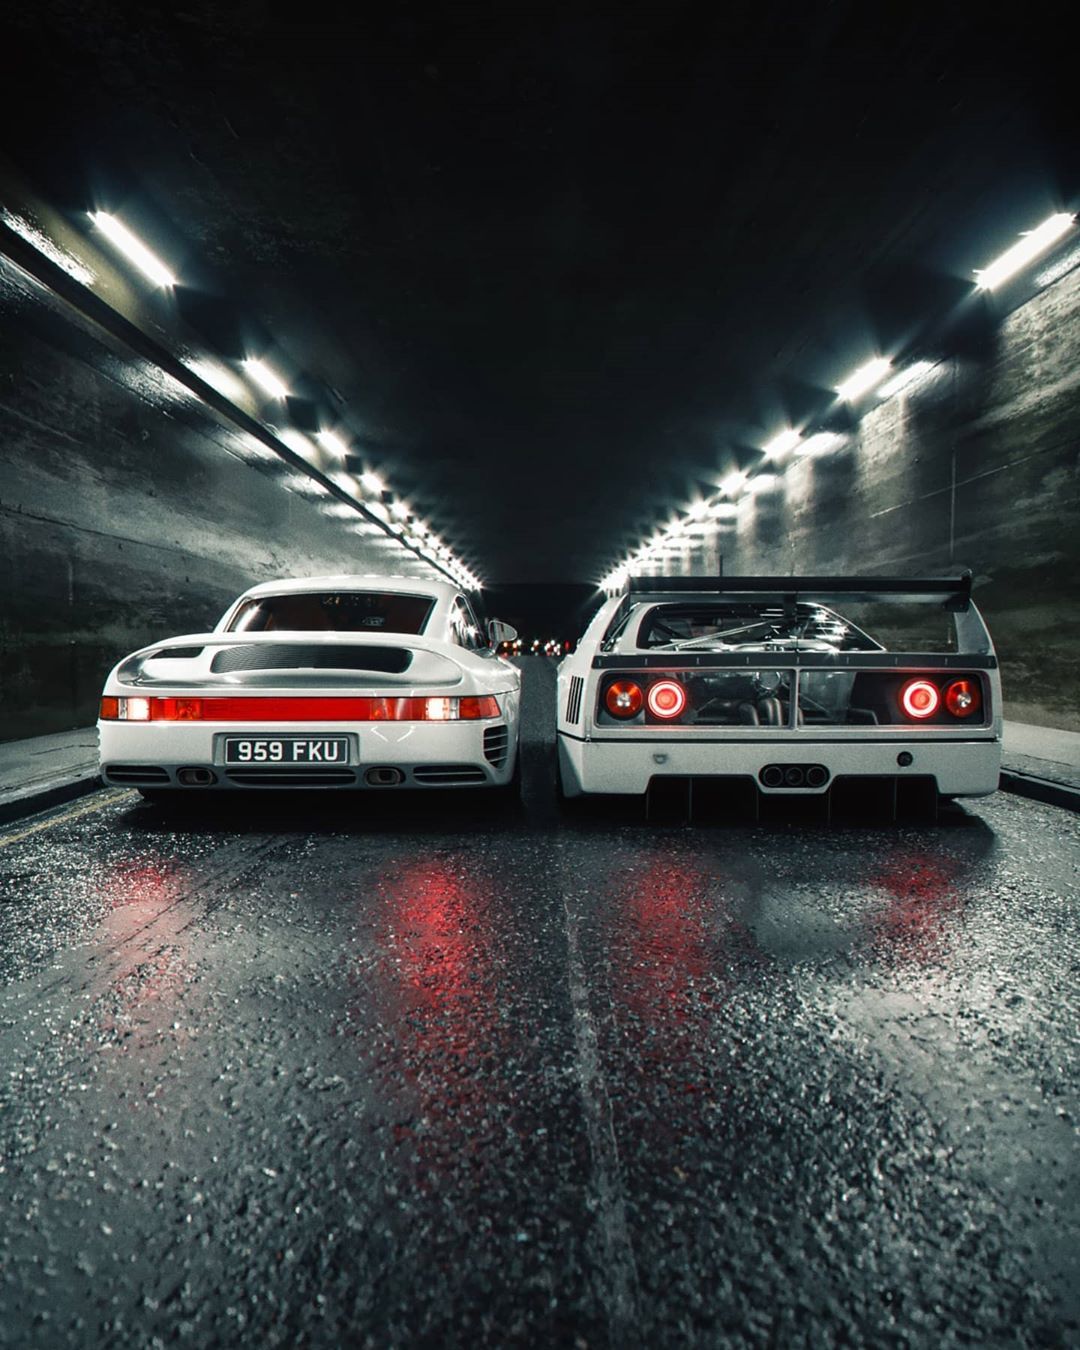 Ferrari F40 LM and Porsche 959 White Lies Share a Tunnel